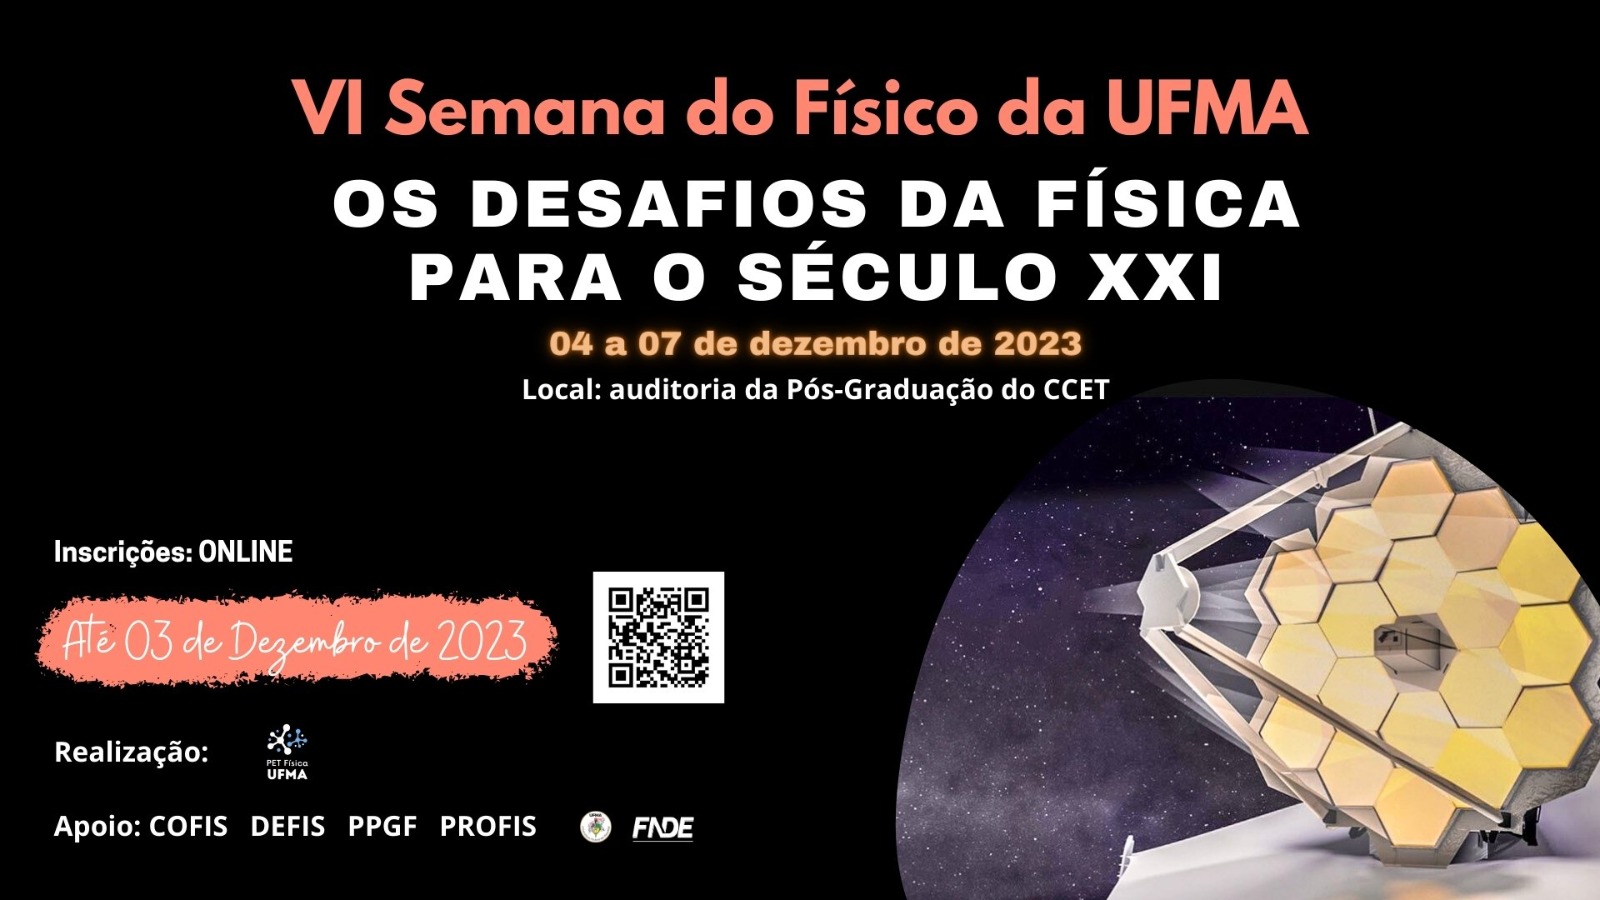 Abertas as inscrições para a VI Semana do Físico da UFMA